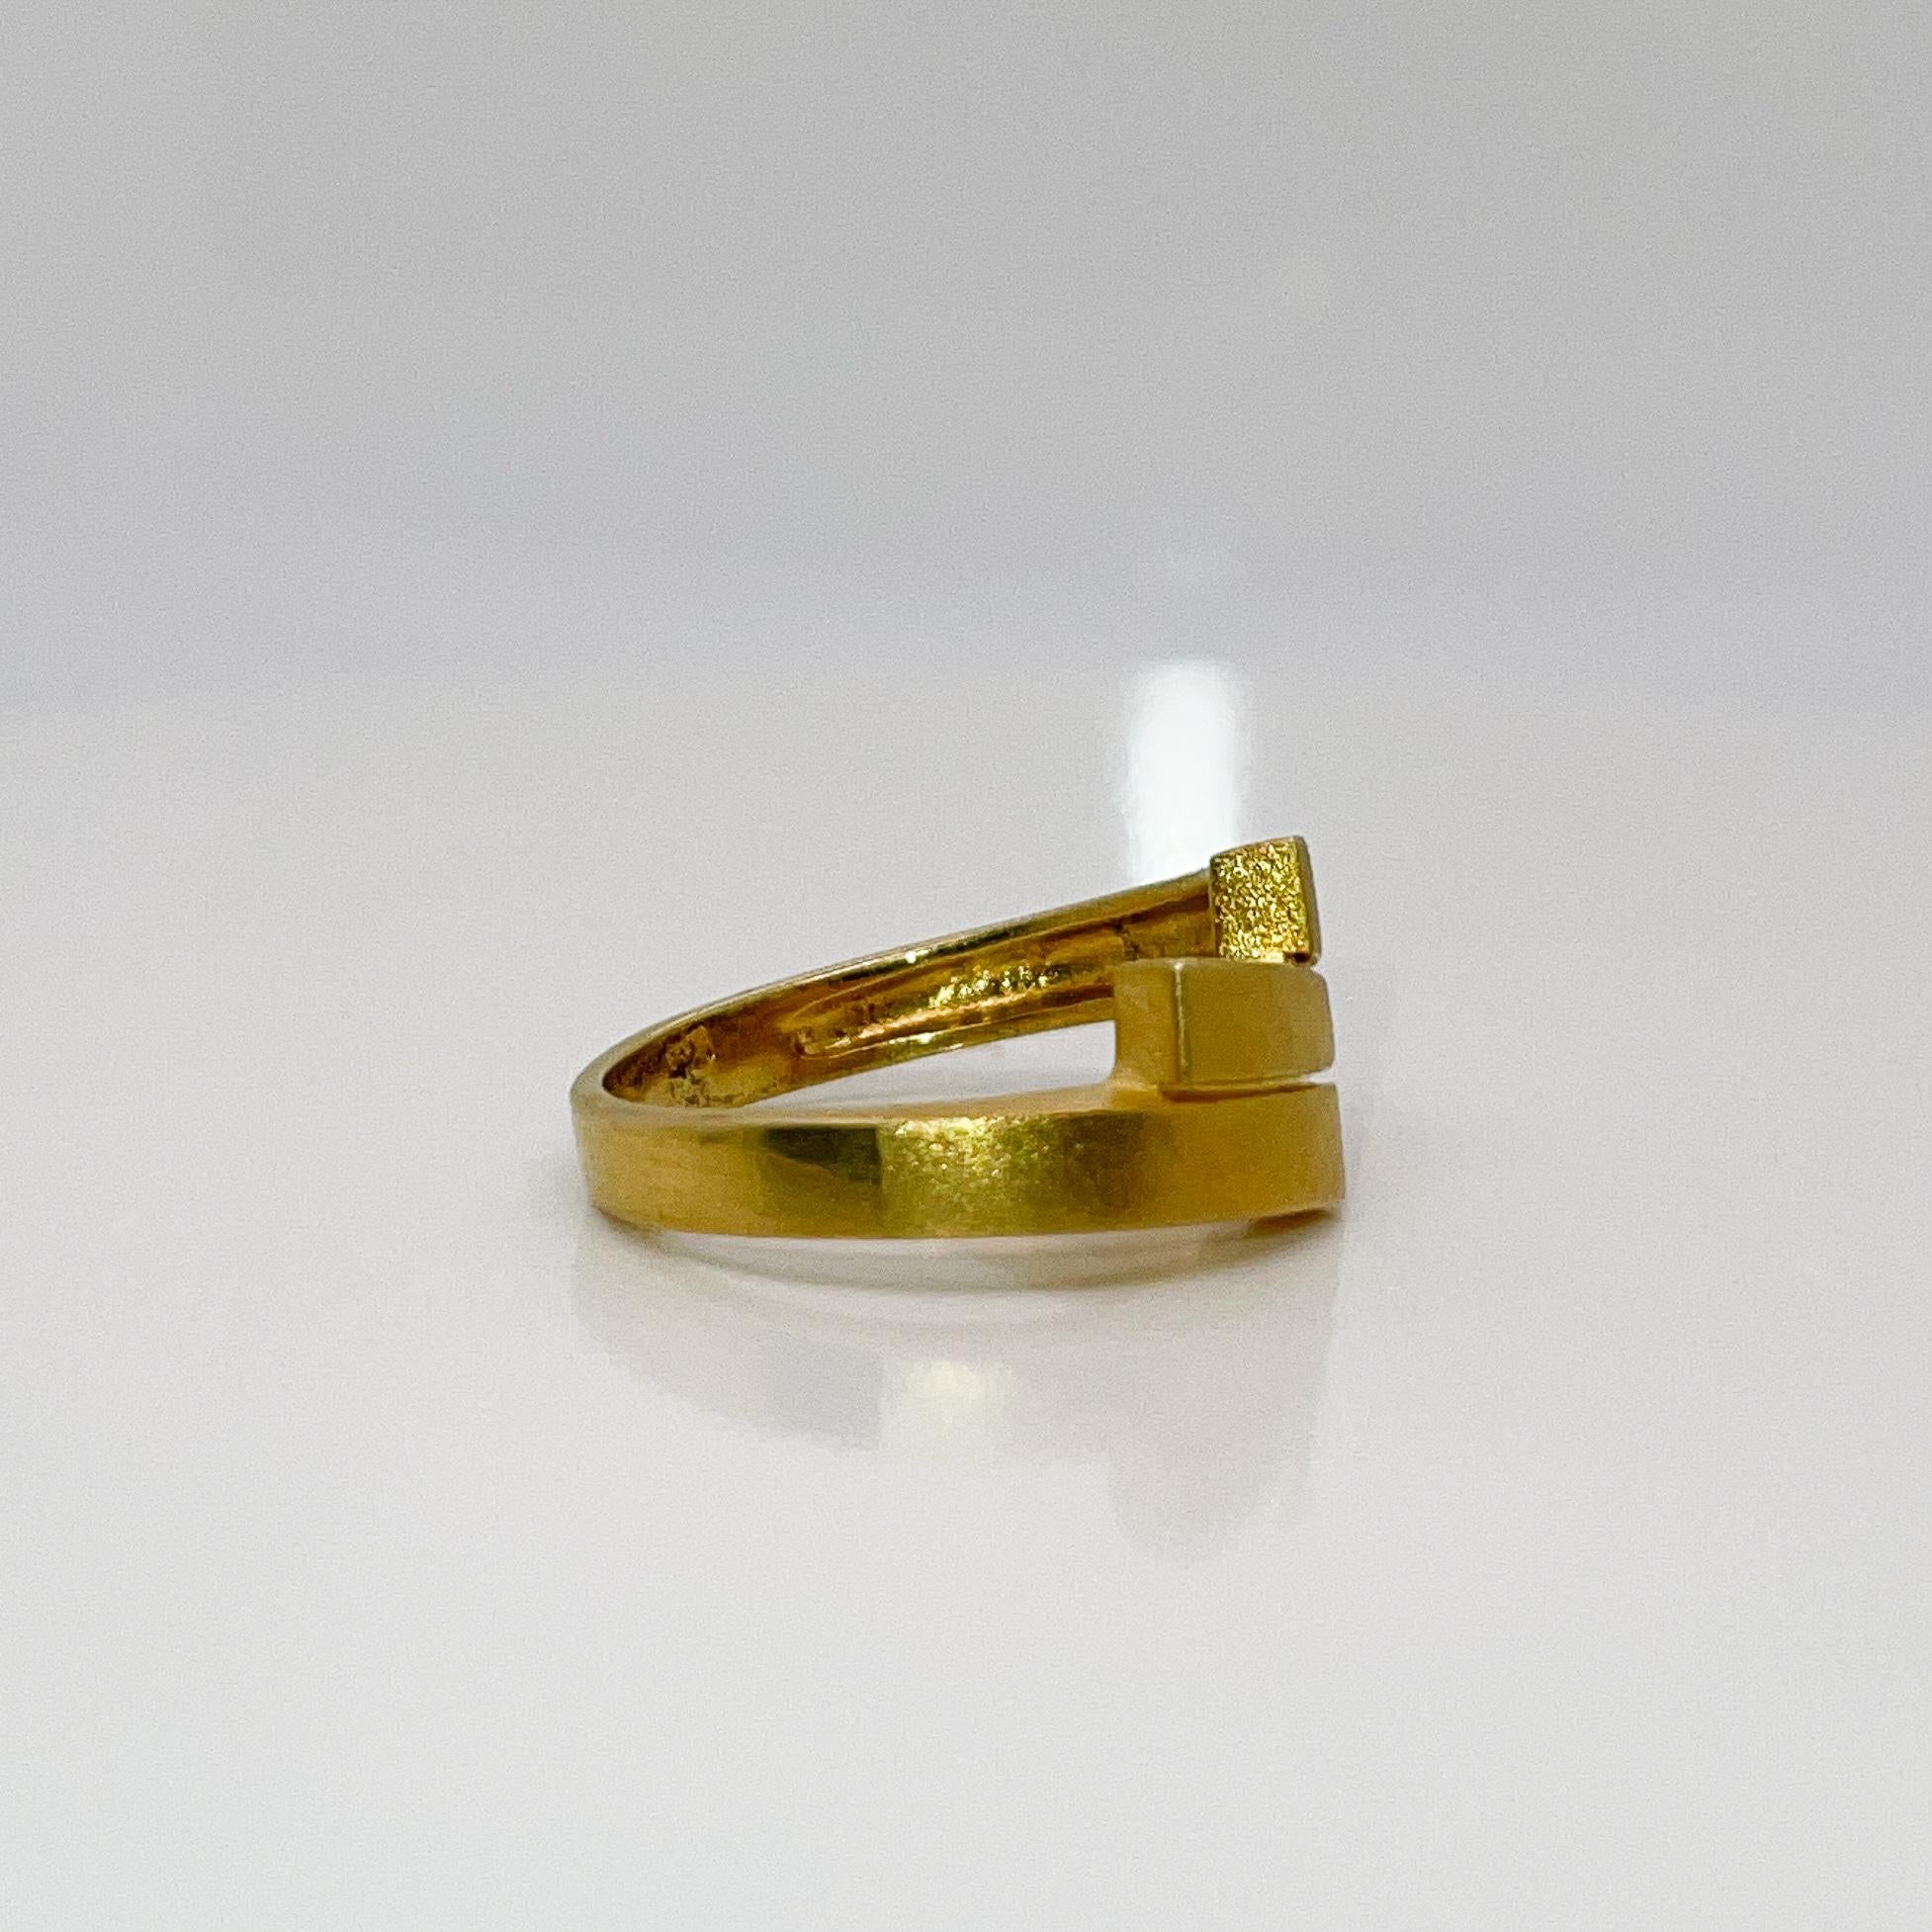 Signed Modernist 18 Karat Gold Ring 1